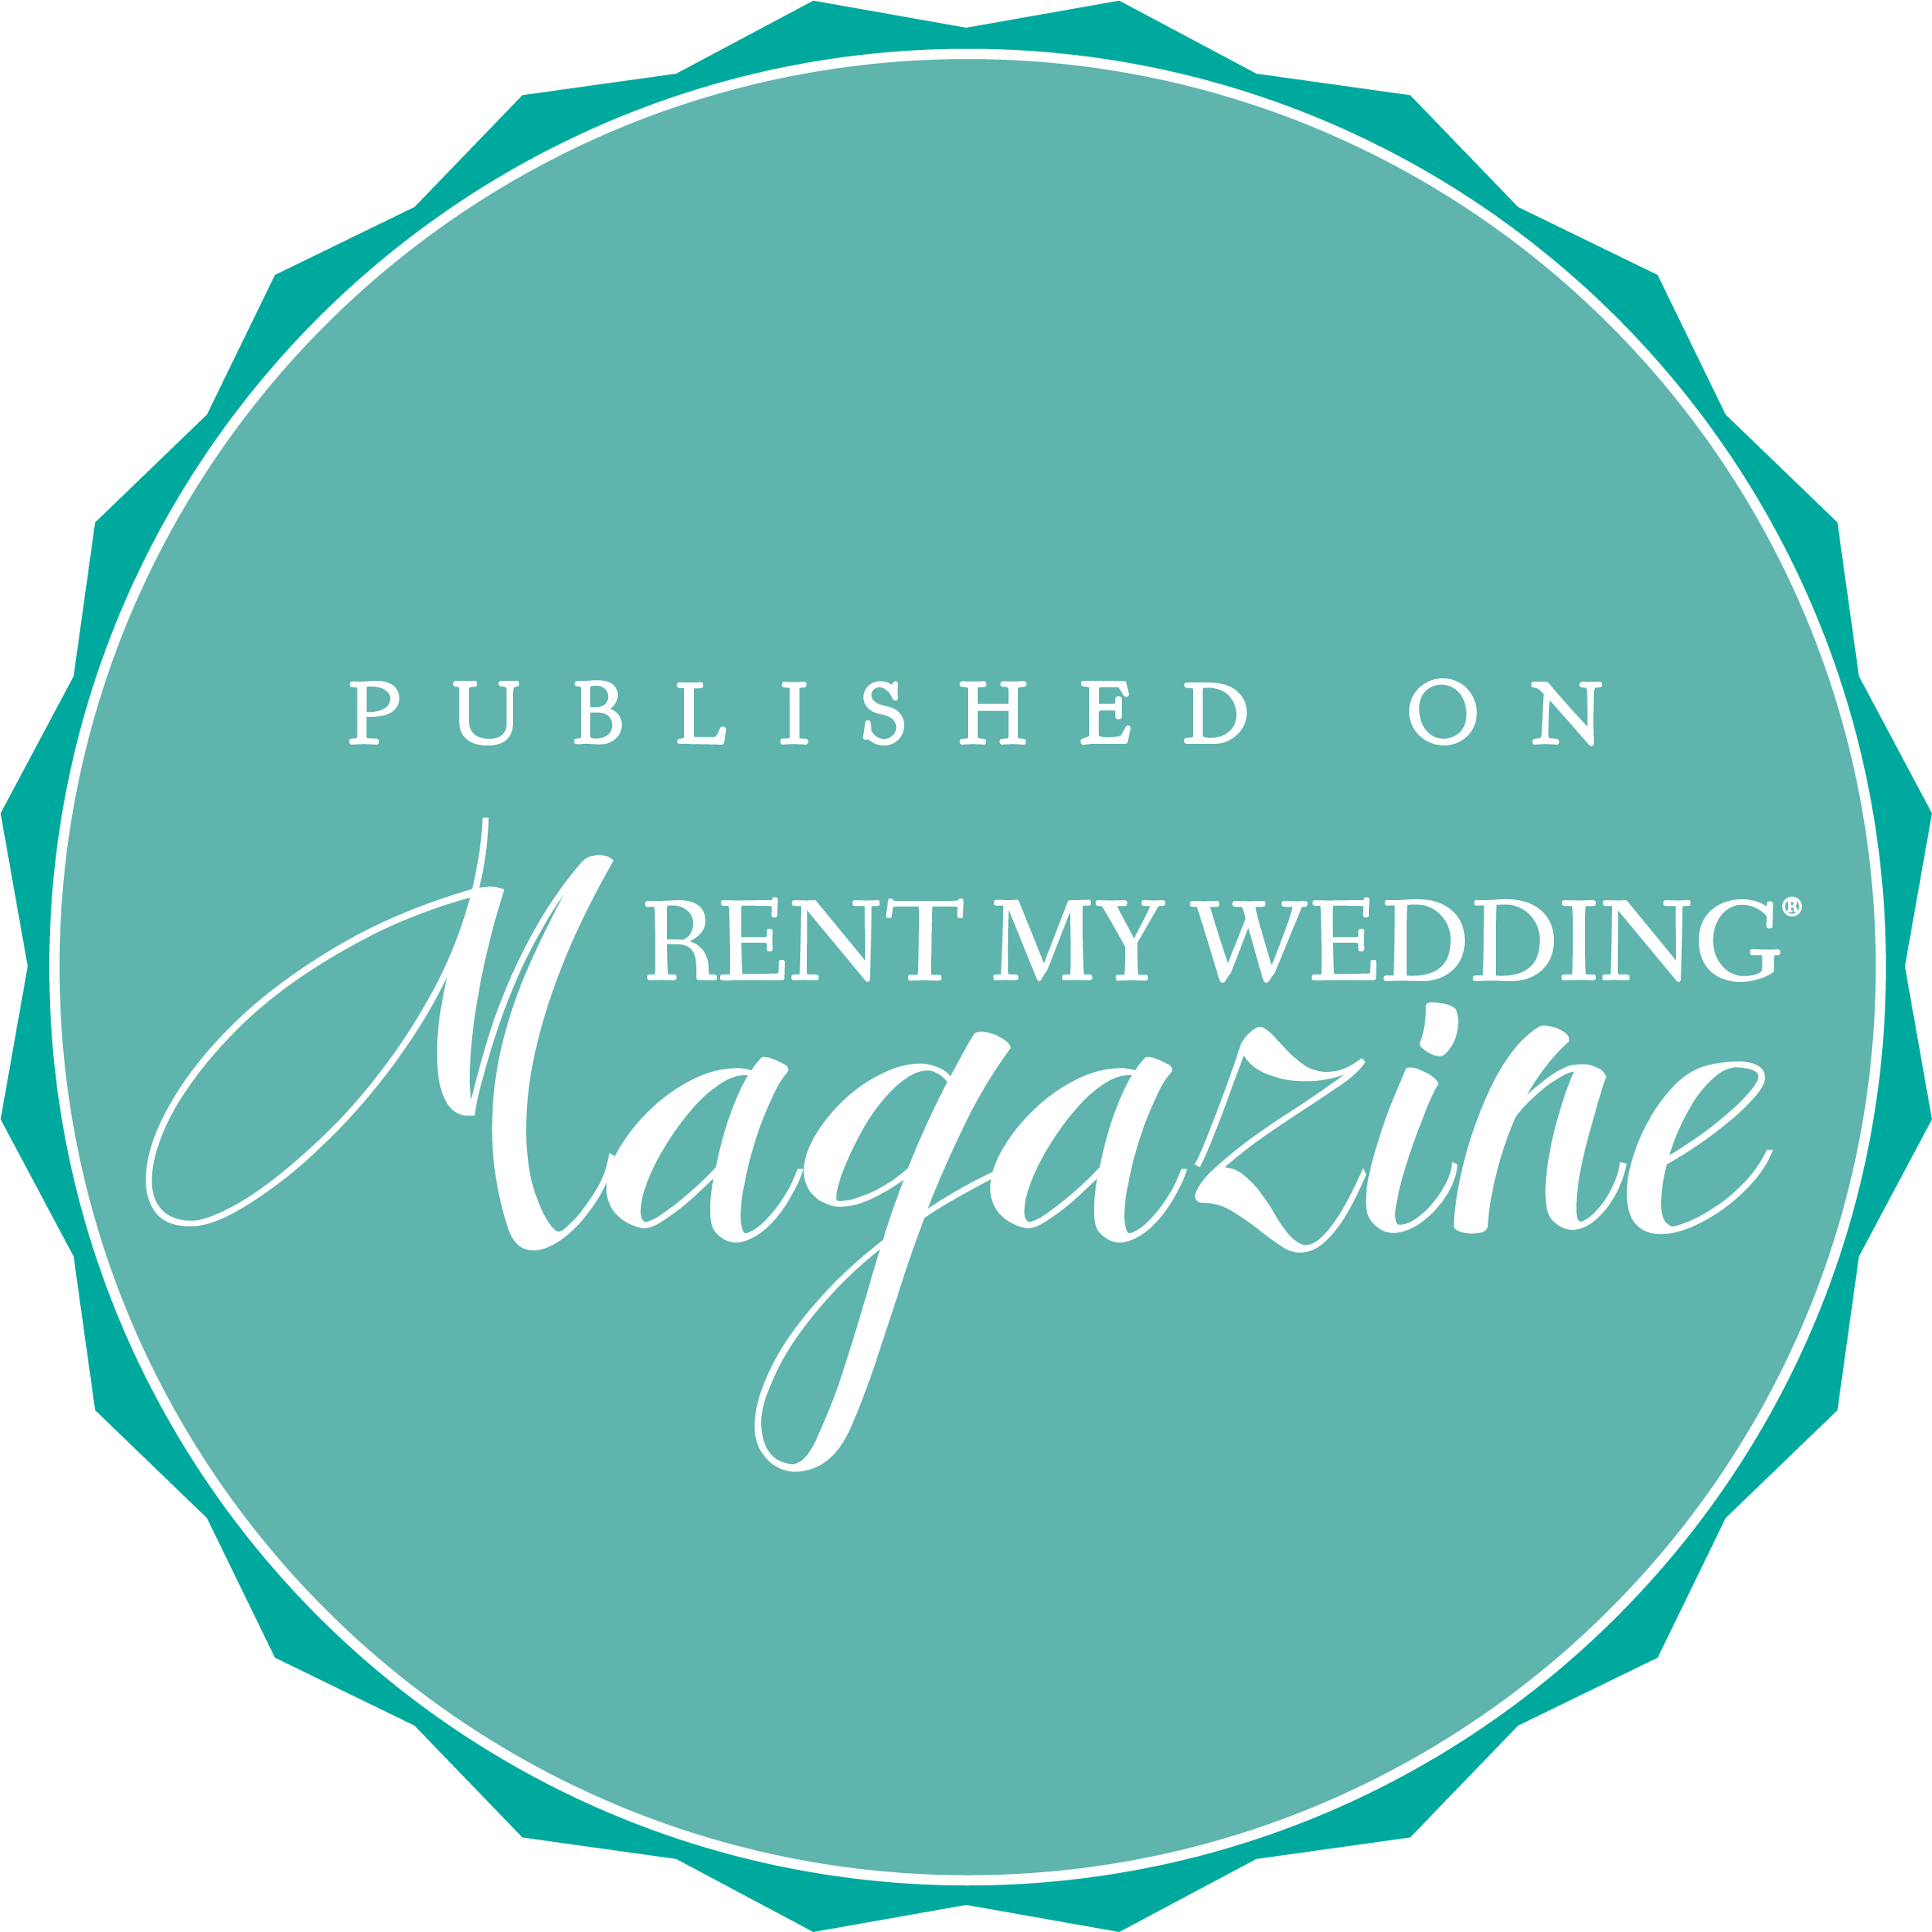 Featured in Rent my Wedding Magazine